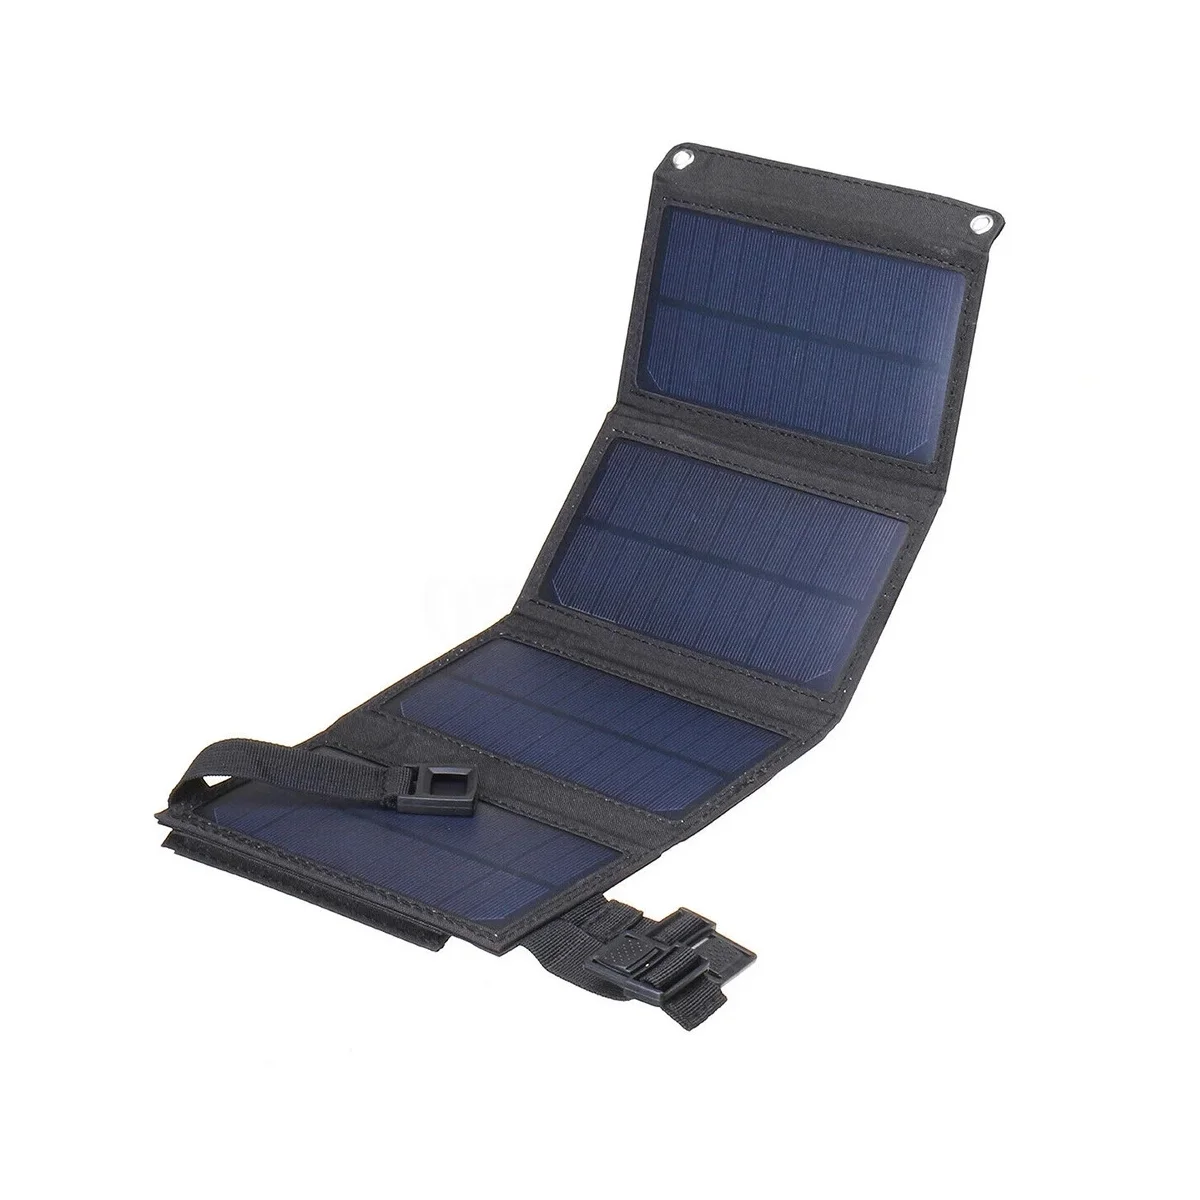 Складной солнечный пакет мощностью 8 Вт, сумка для солнечной зарядки, USB-устройство для мобильного телефона, портативное солнечное зарядное устройство, зарядная плата, черный